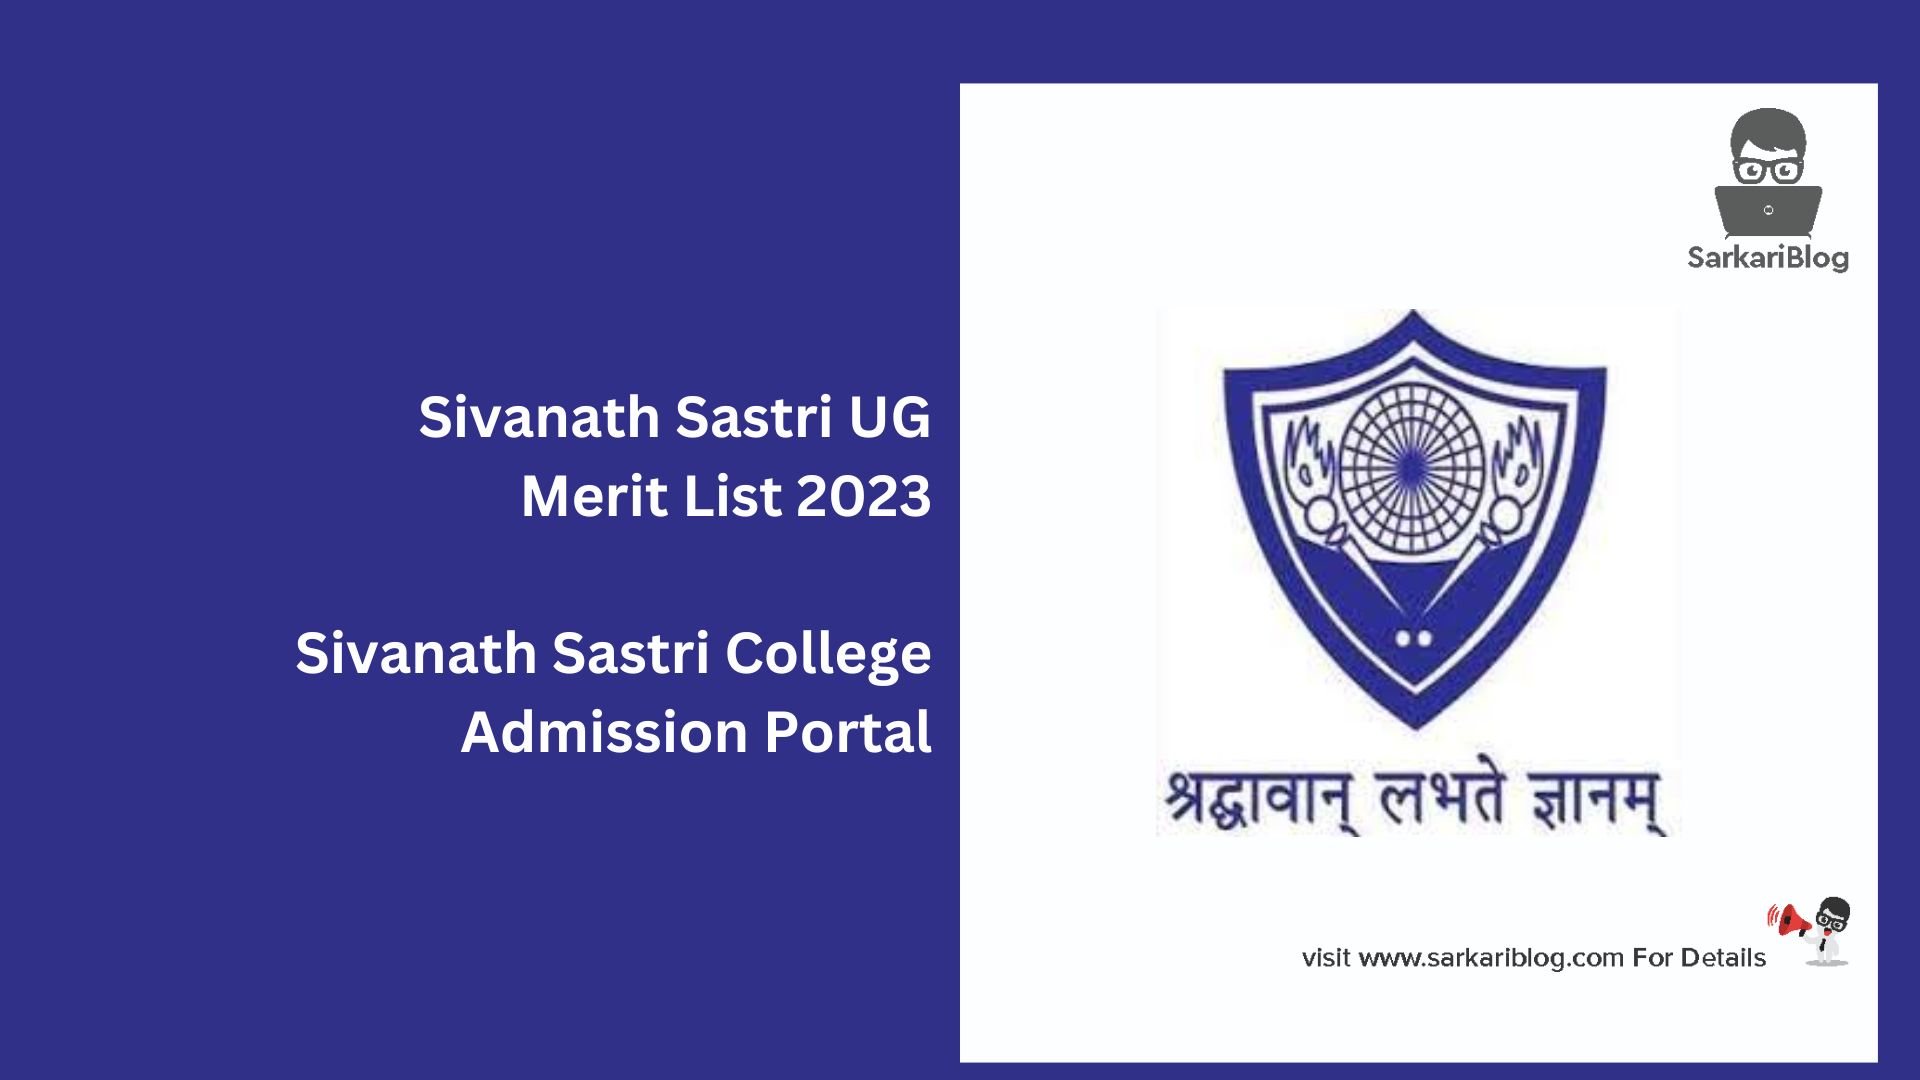 Sivanath Sastri UG Merit List 2023